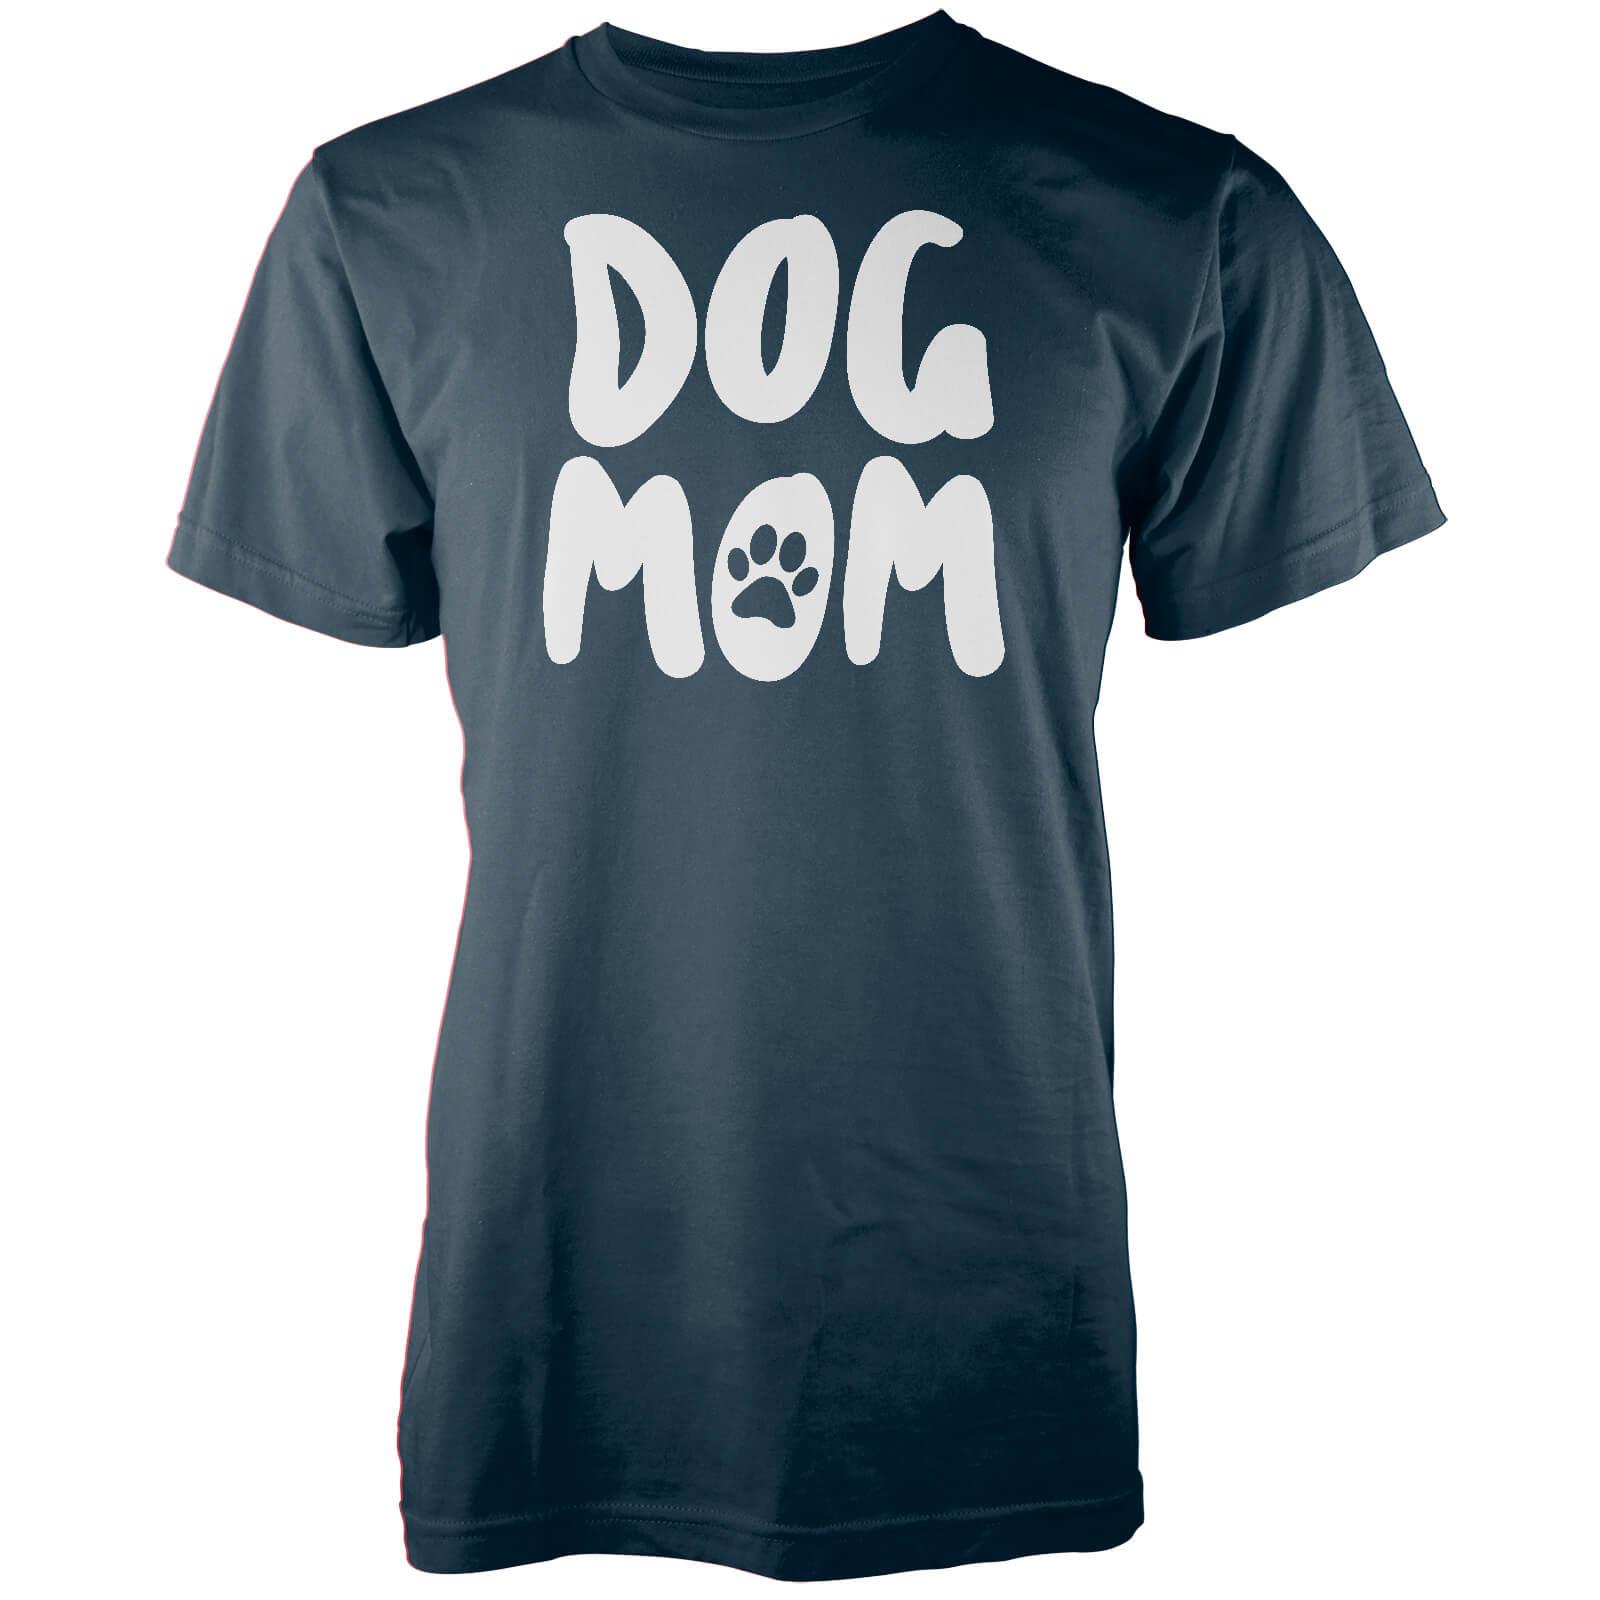 Dog Mom Navy T-Shirt - S - Navy